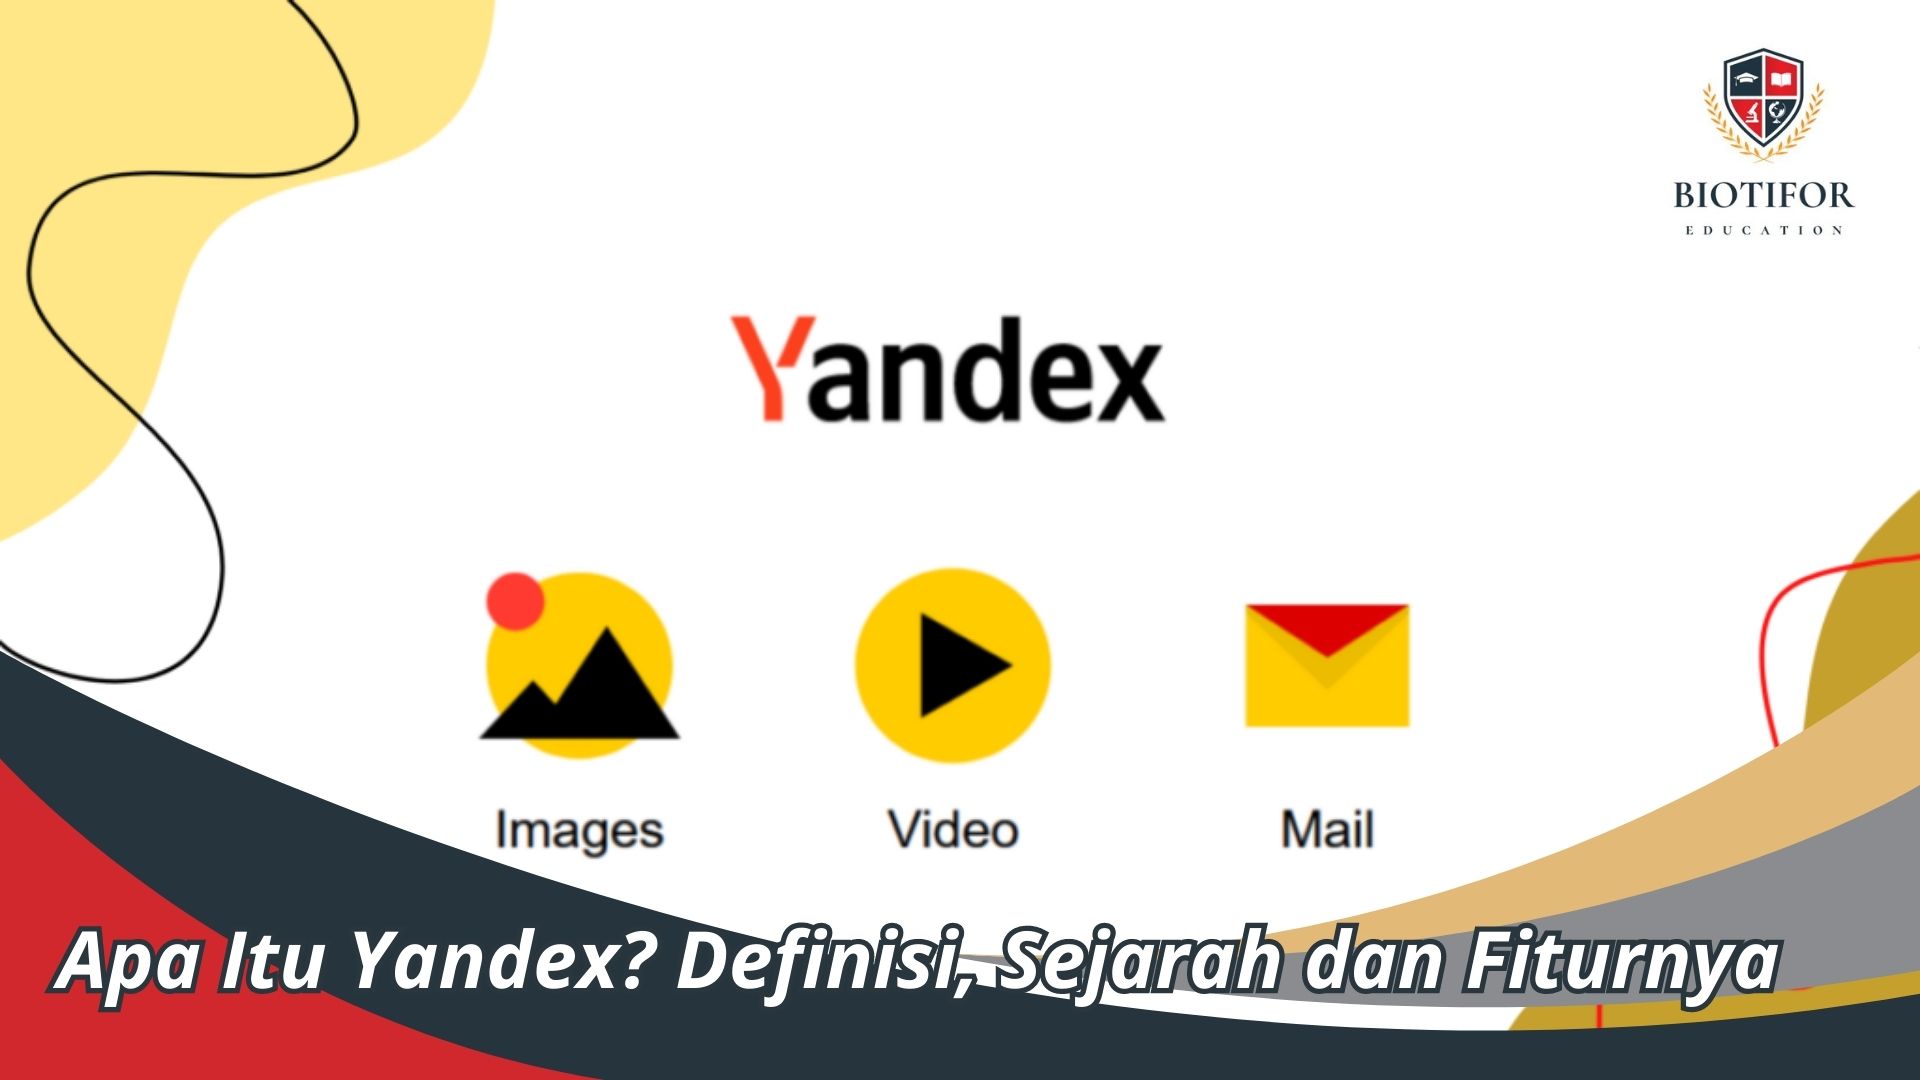 Apa Itu Yandex? Definisi, Sejarah dan Fiturnya